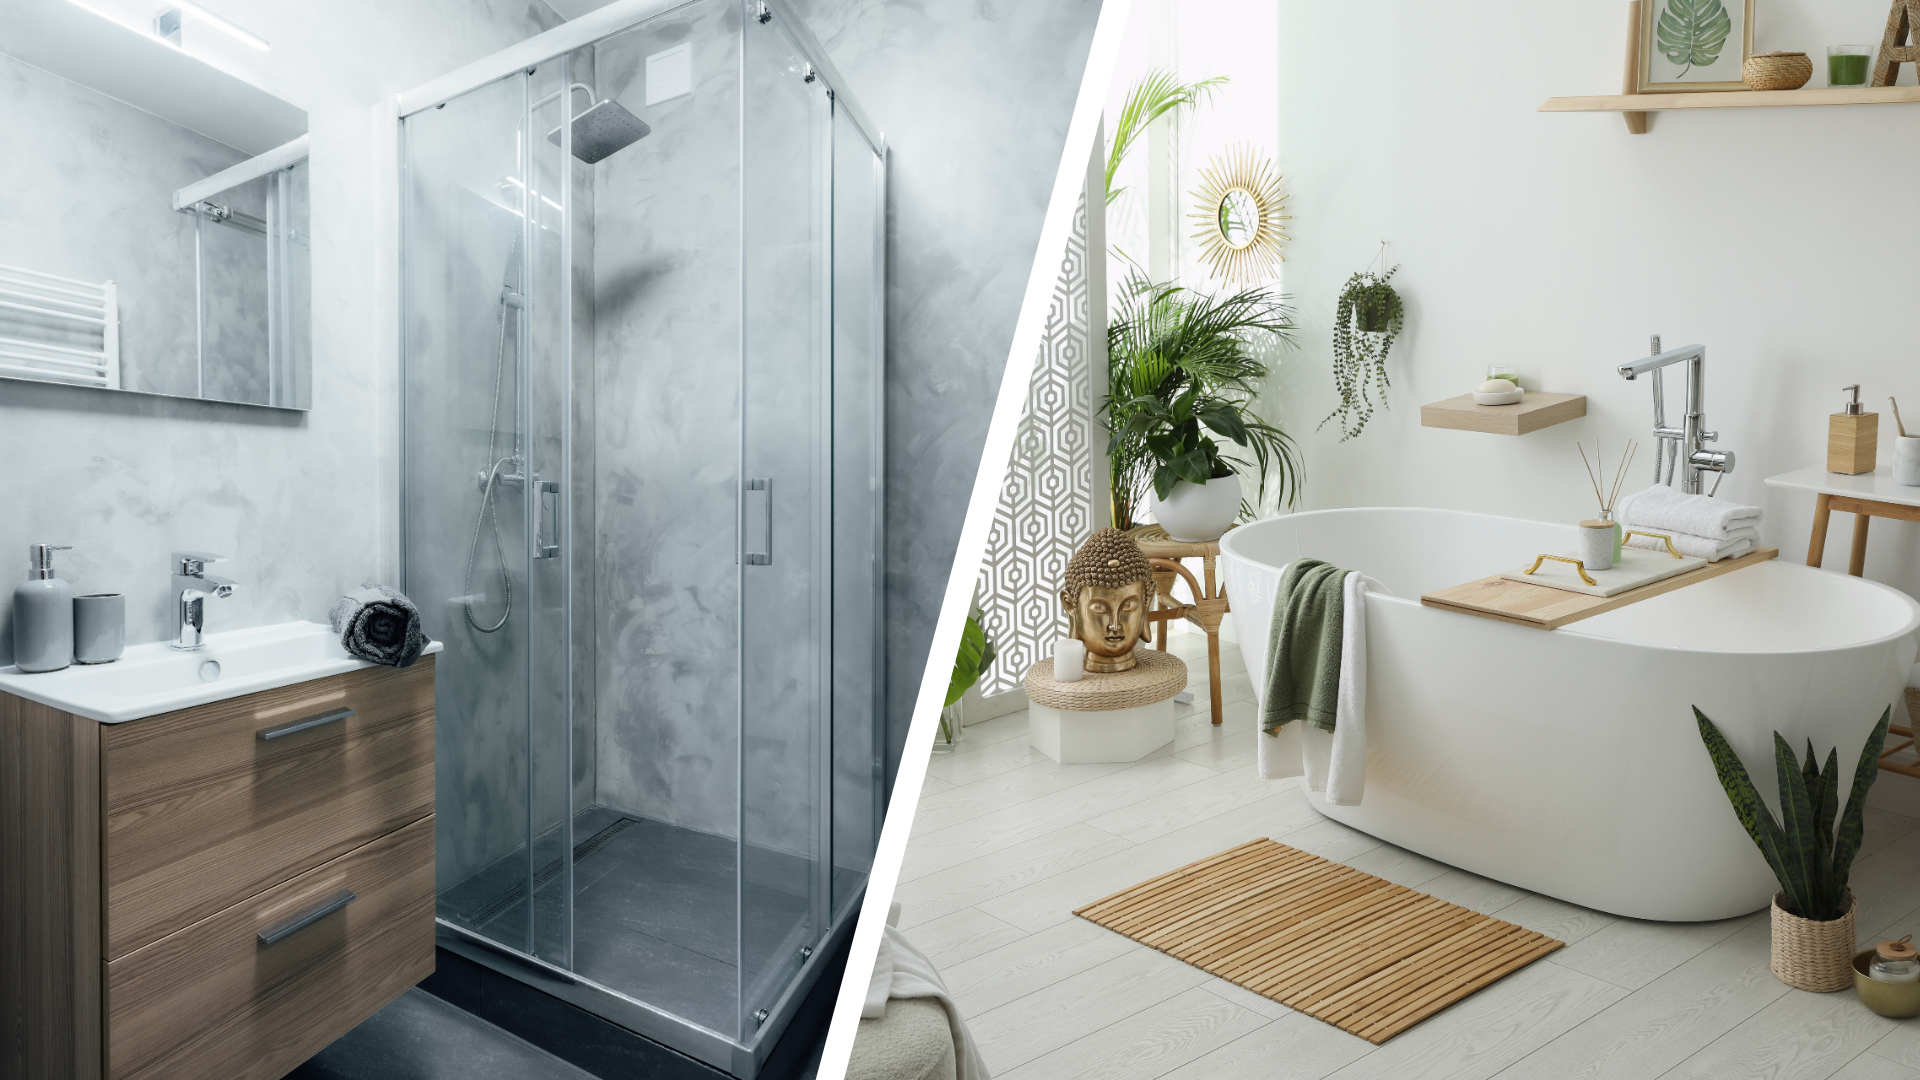 Baignoire ou douche : Quelle est la meilleure option ?